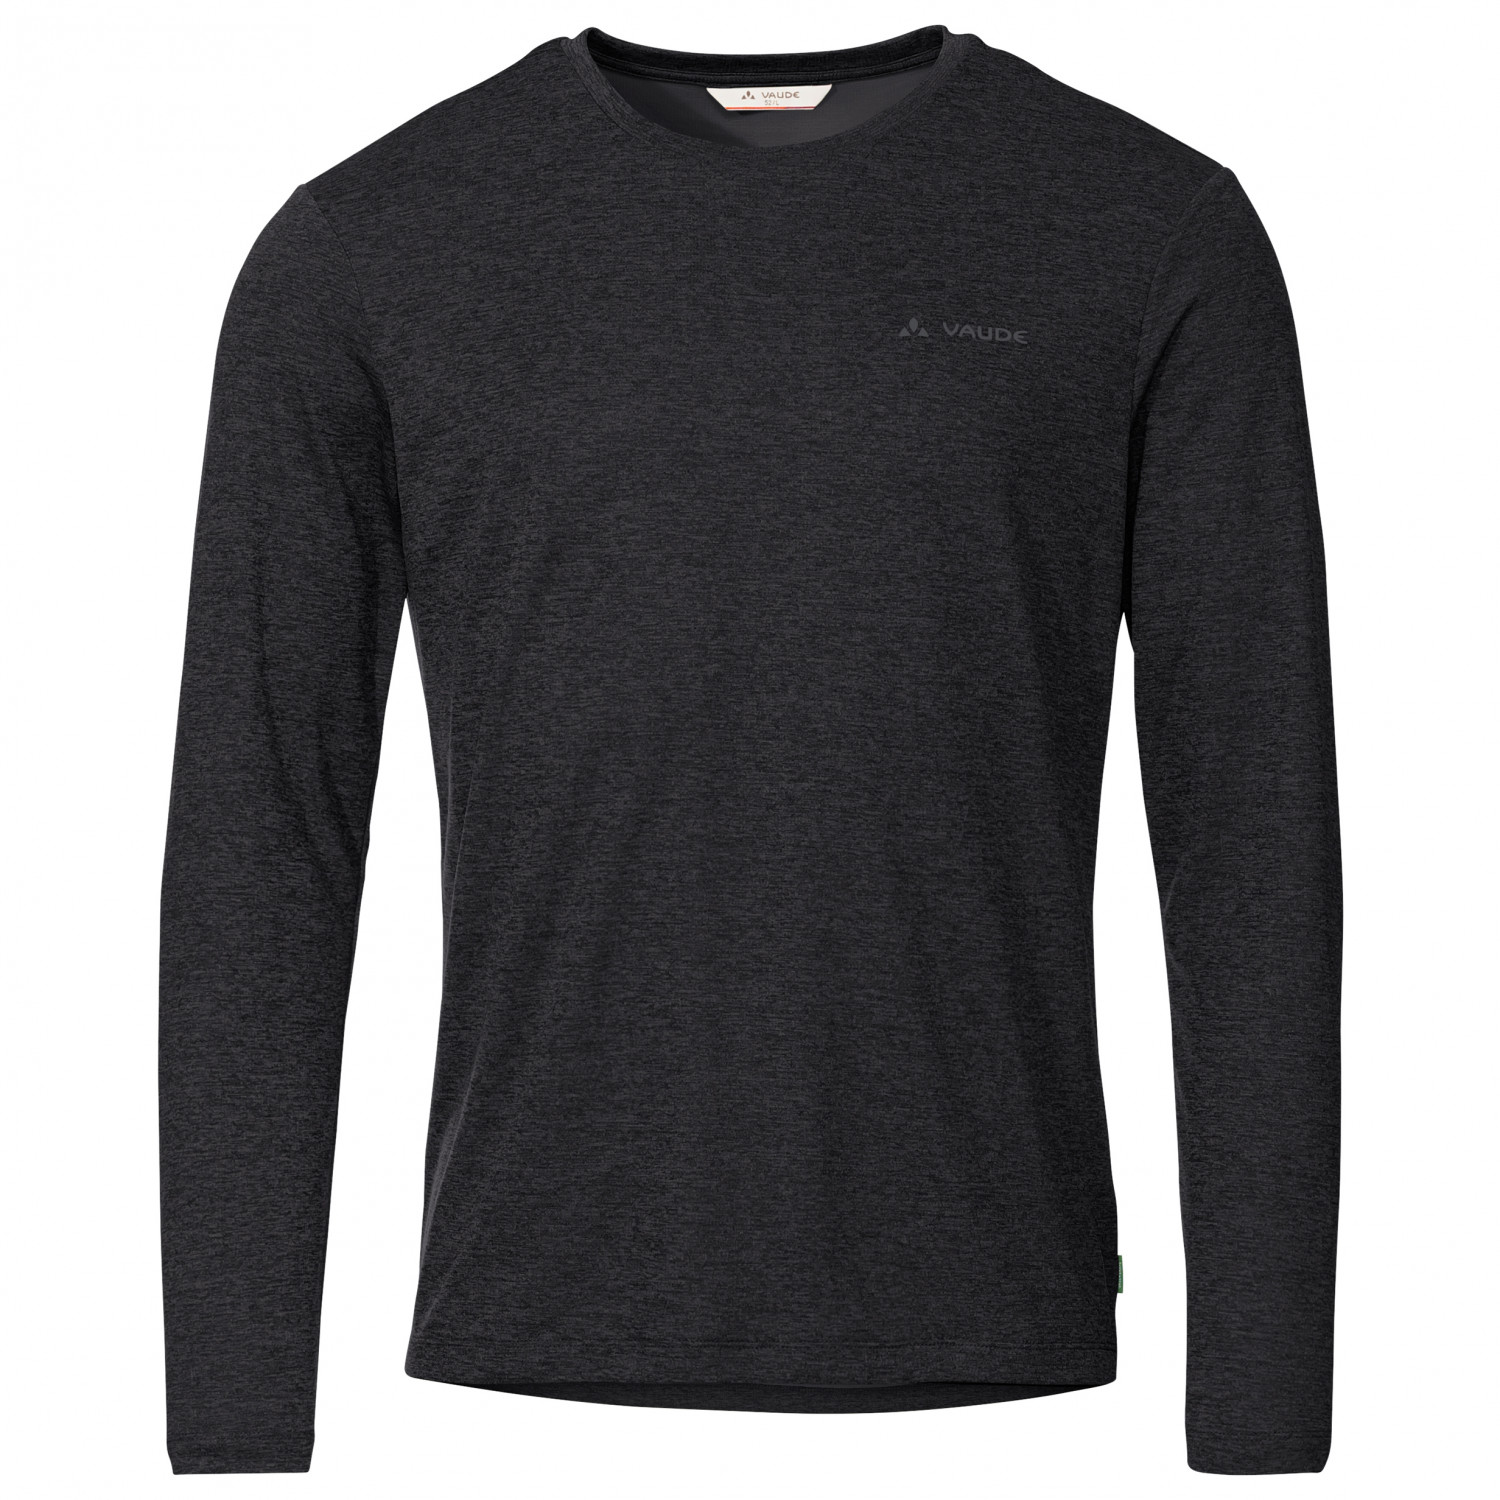 Функциональная рубашка Vaude Essential L/S T Shirt, черный funny saying gymnastics training men s t shirt